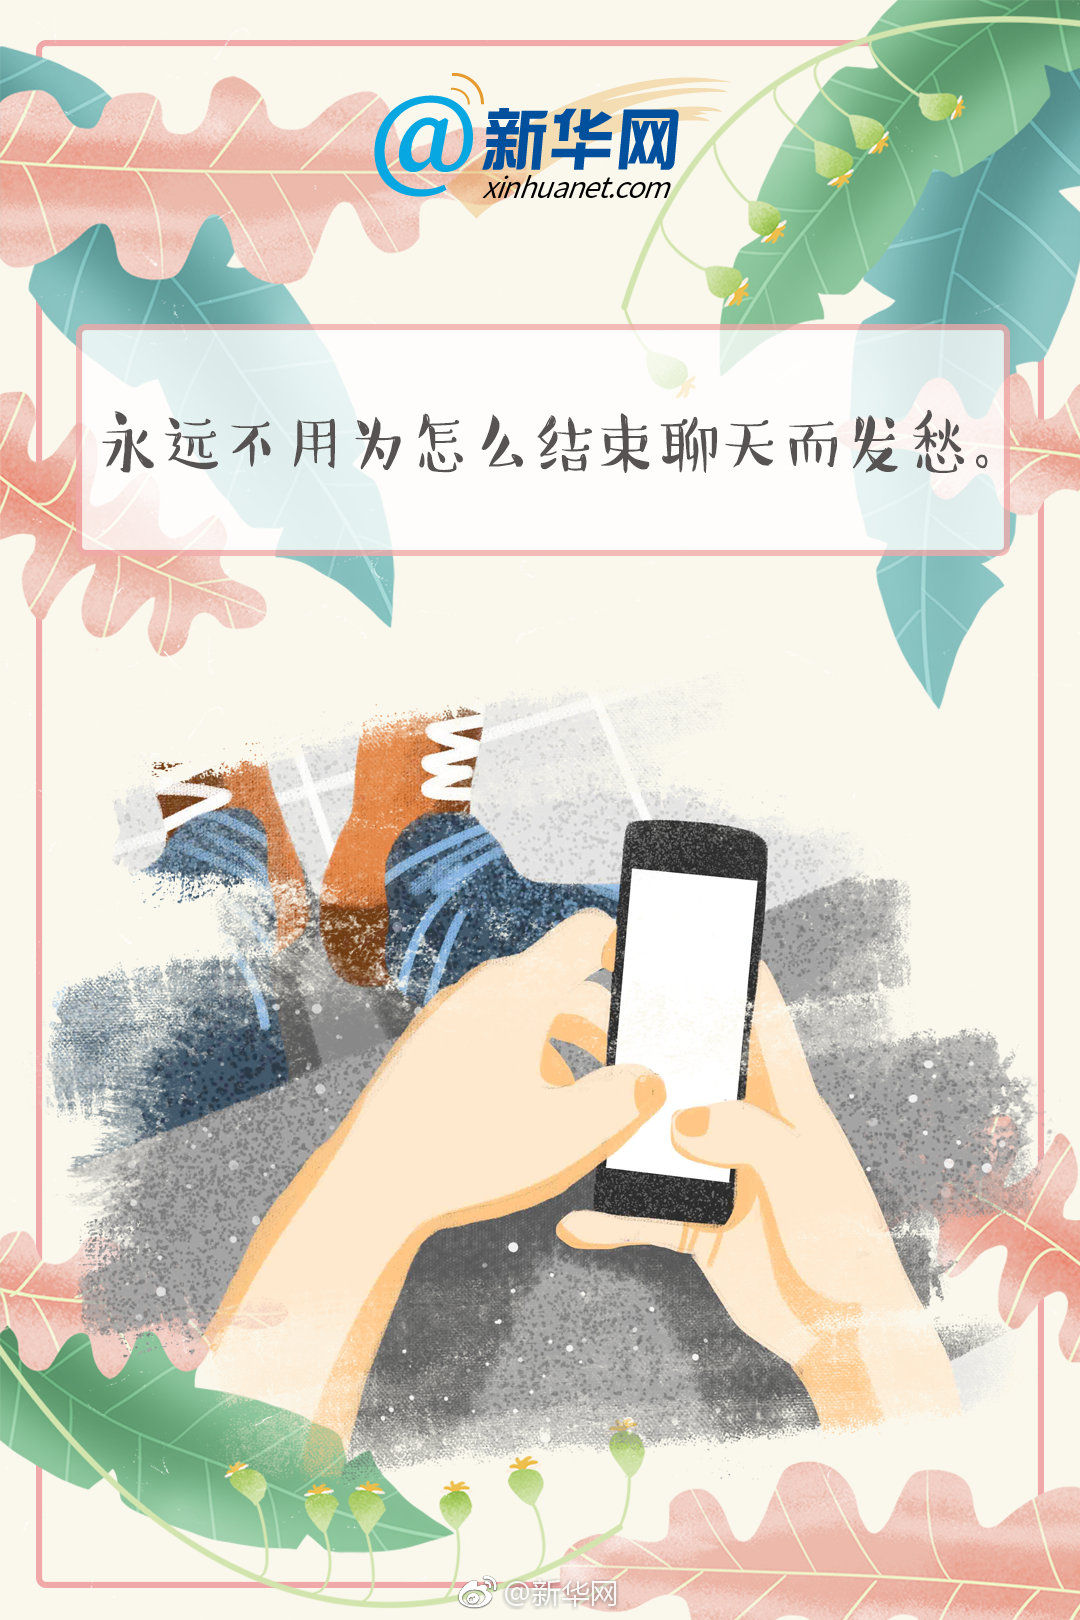 参考日历｜他们是展示中国形象的名片，传递大爱情怀